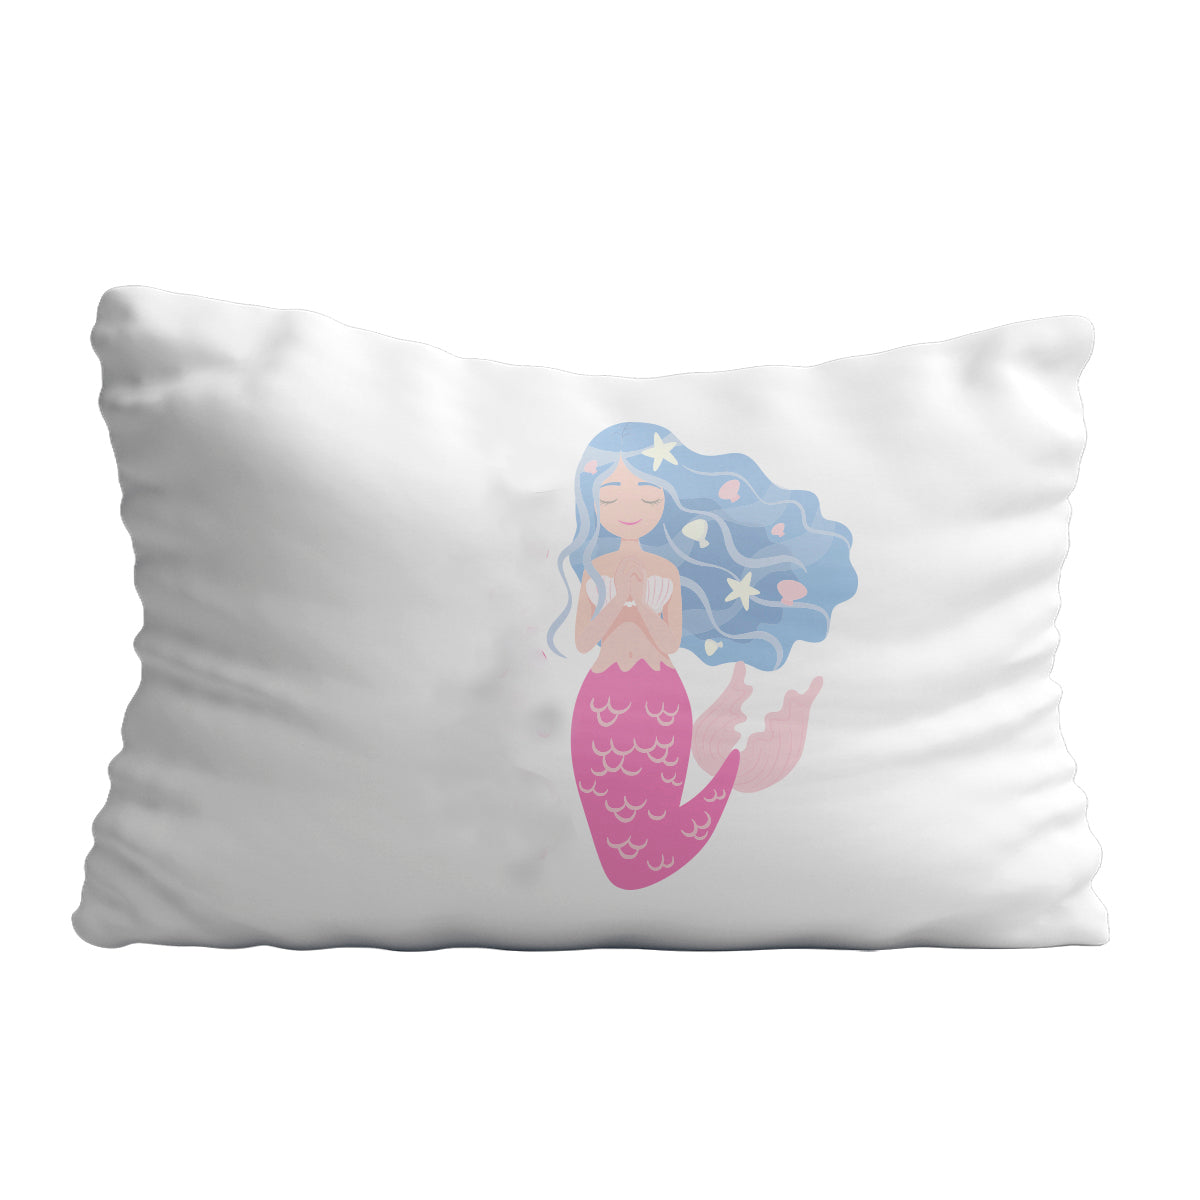 Mermaid name white pillow case - Wimziy&Co.